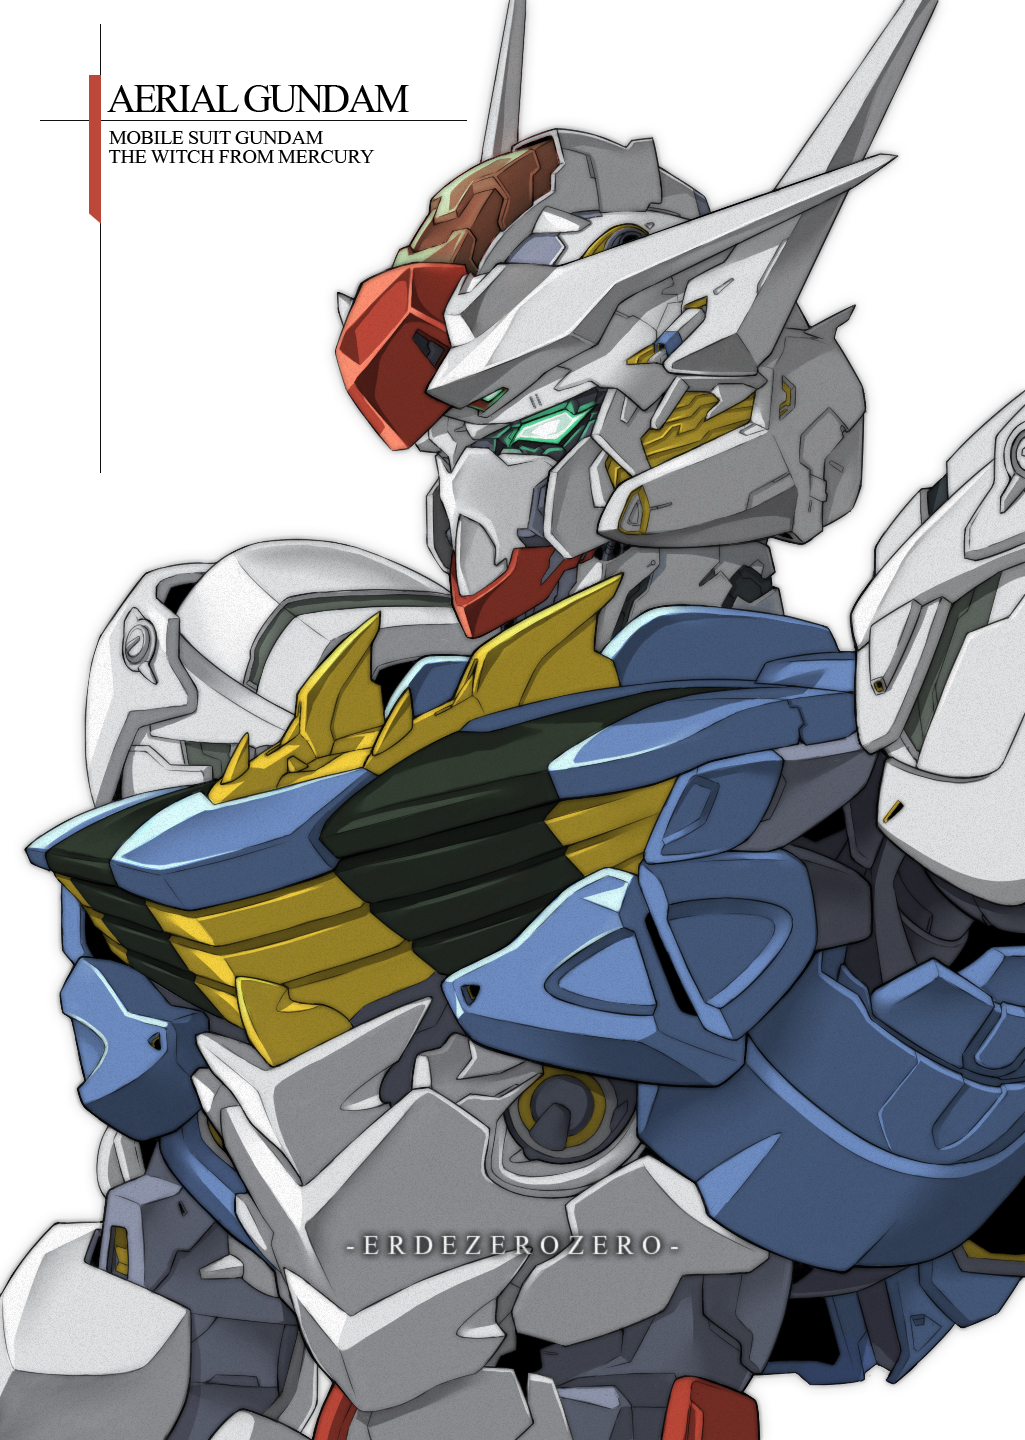 Wallpaper, Mobile Suit Gundam THE WITCH FROM MERCURY, Gundam Aerial, Super Robot Taisen, artwork, digital art, fan art, mechs 1025x1440